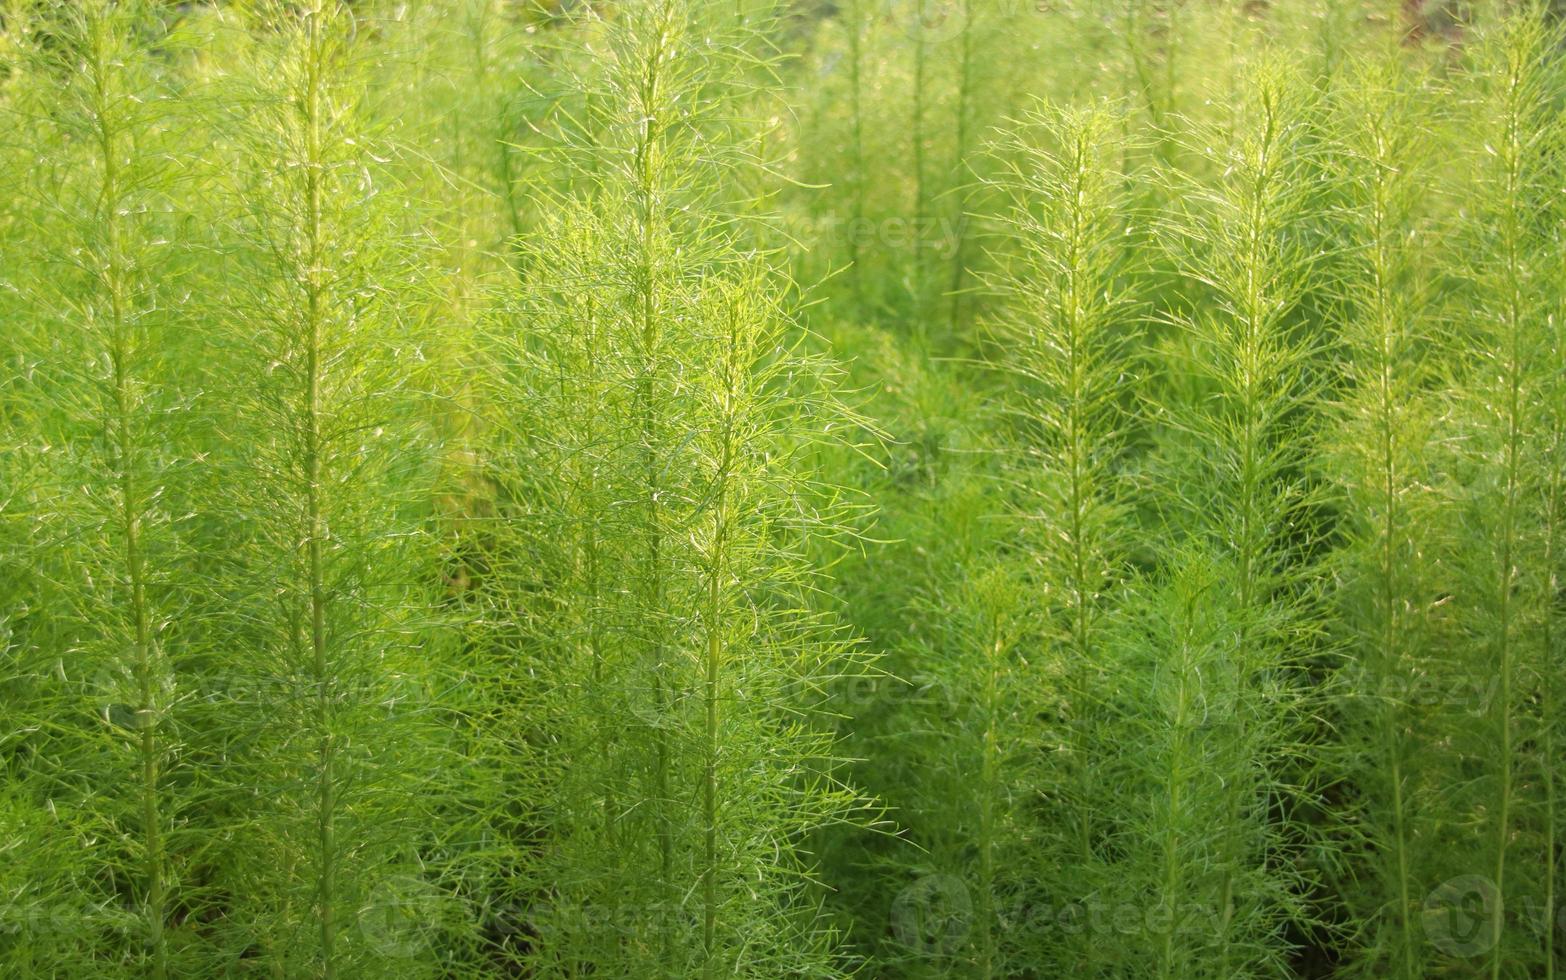 gröna blad av hundfänkål eller thoroughwort, thailand. bladformen ser ut som fjäderlik eller linje. foto